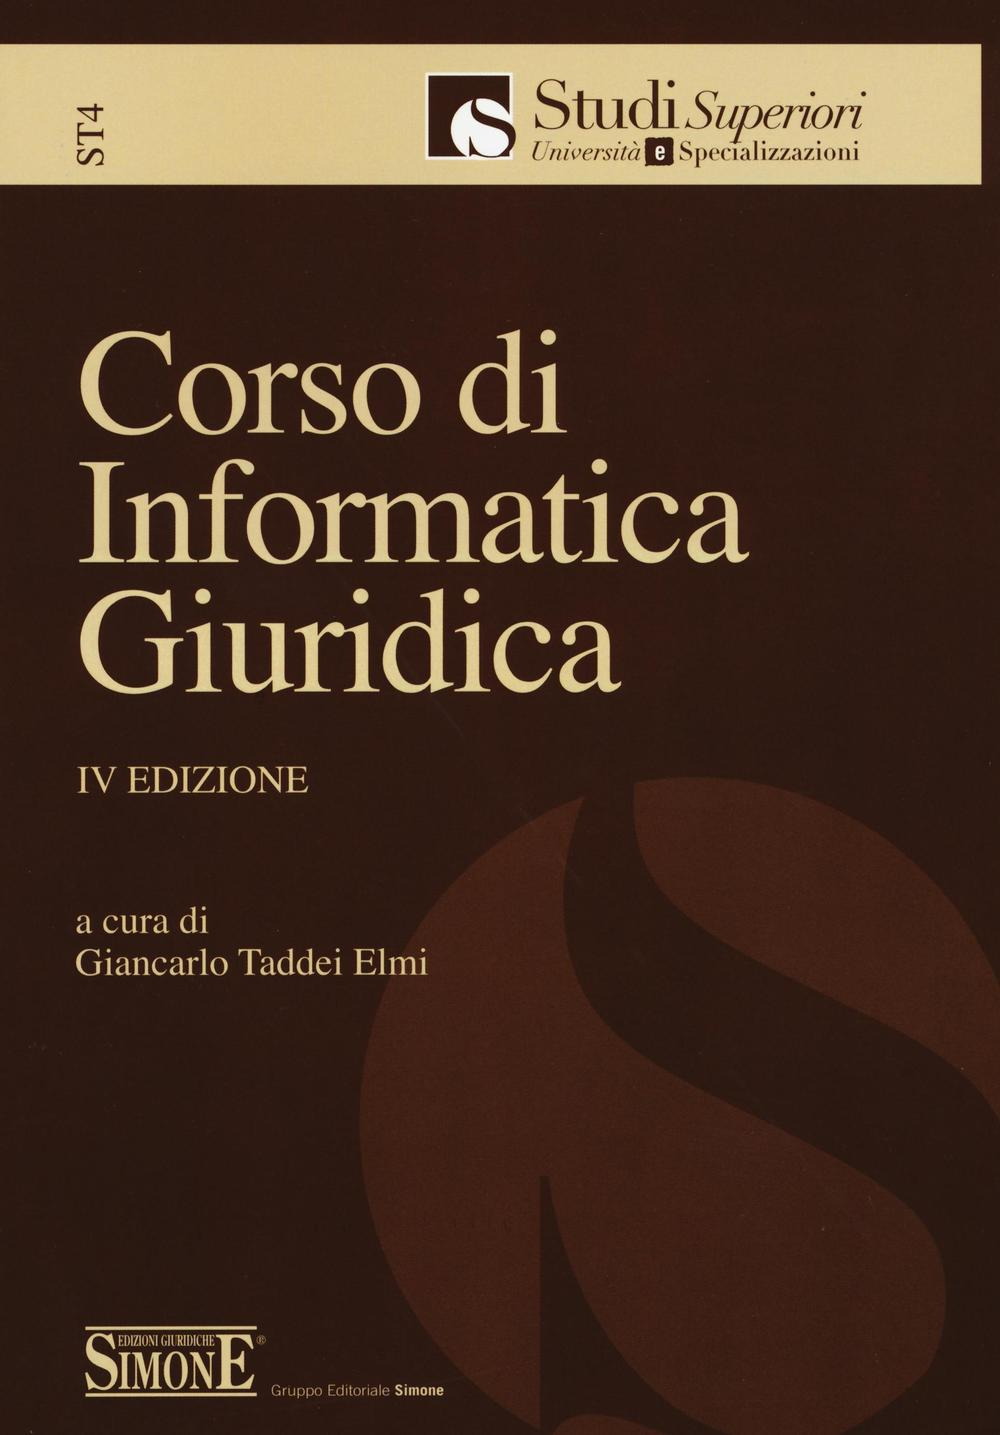 Image of Corso di informatica giuridica